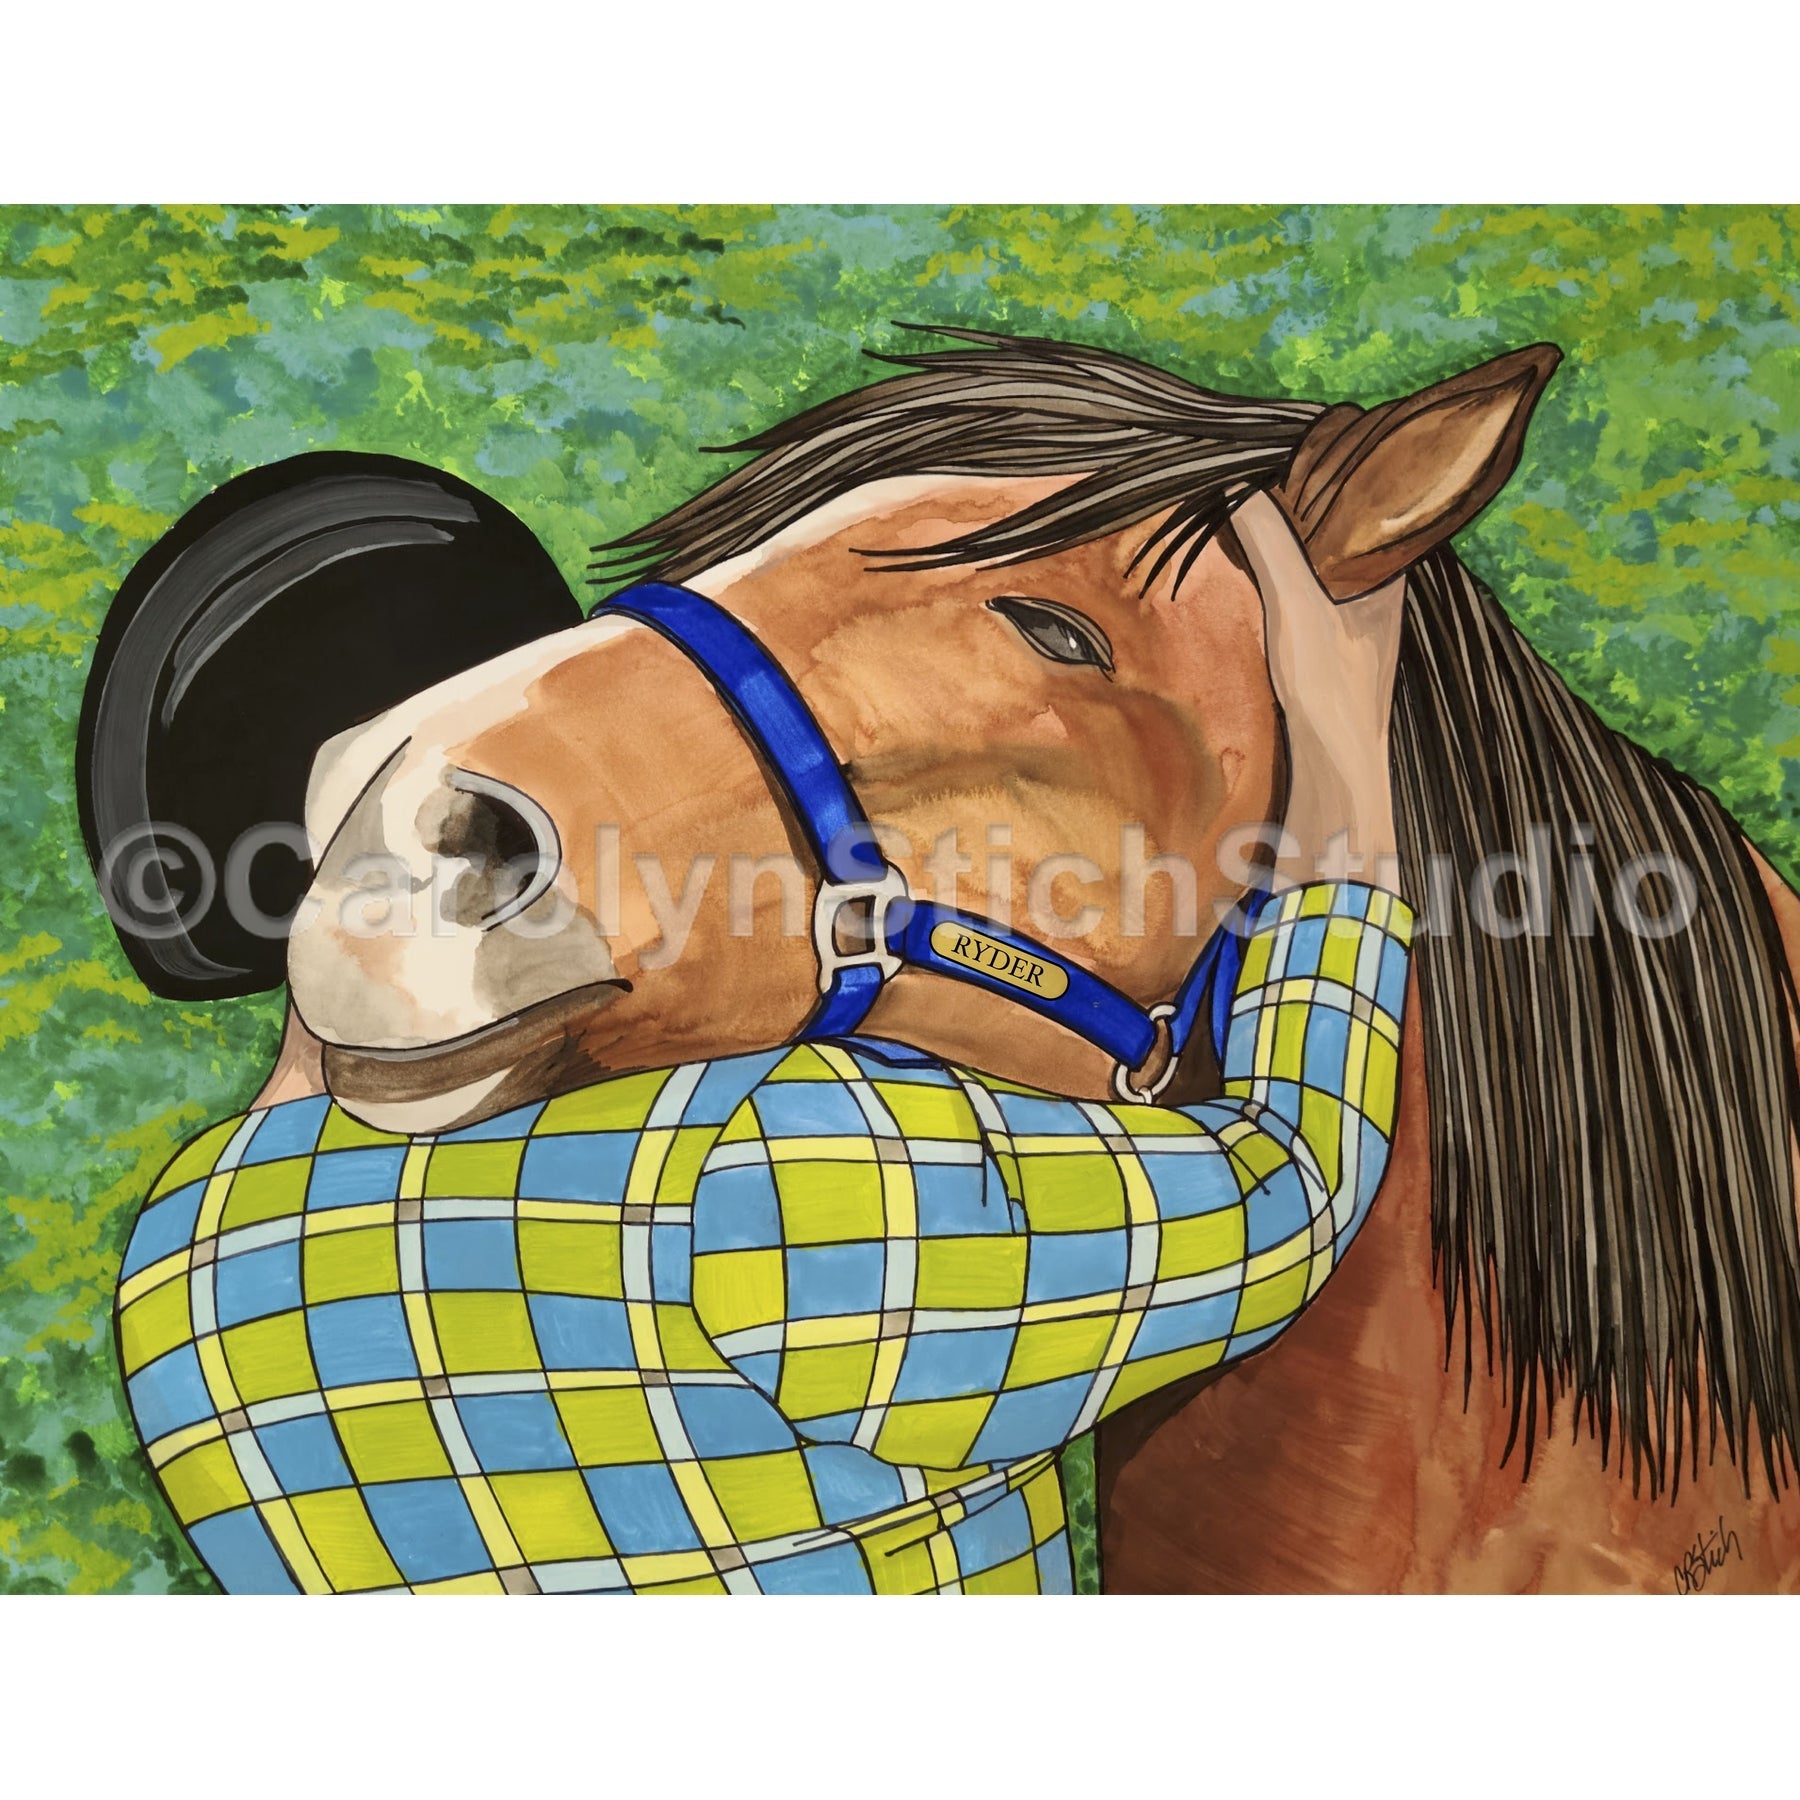 Horse Hug, rug hooking pattern